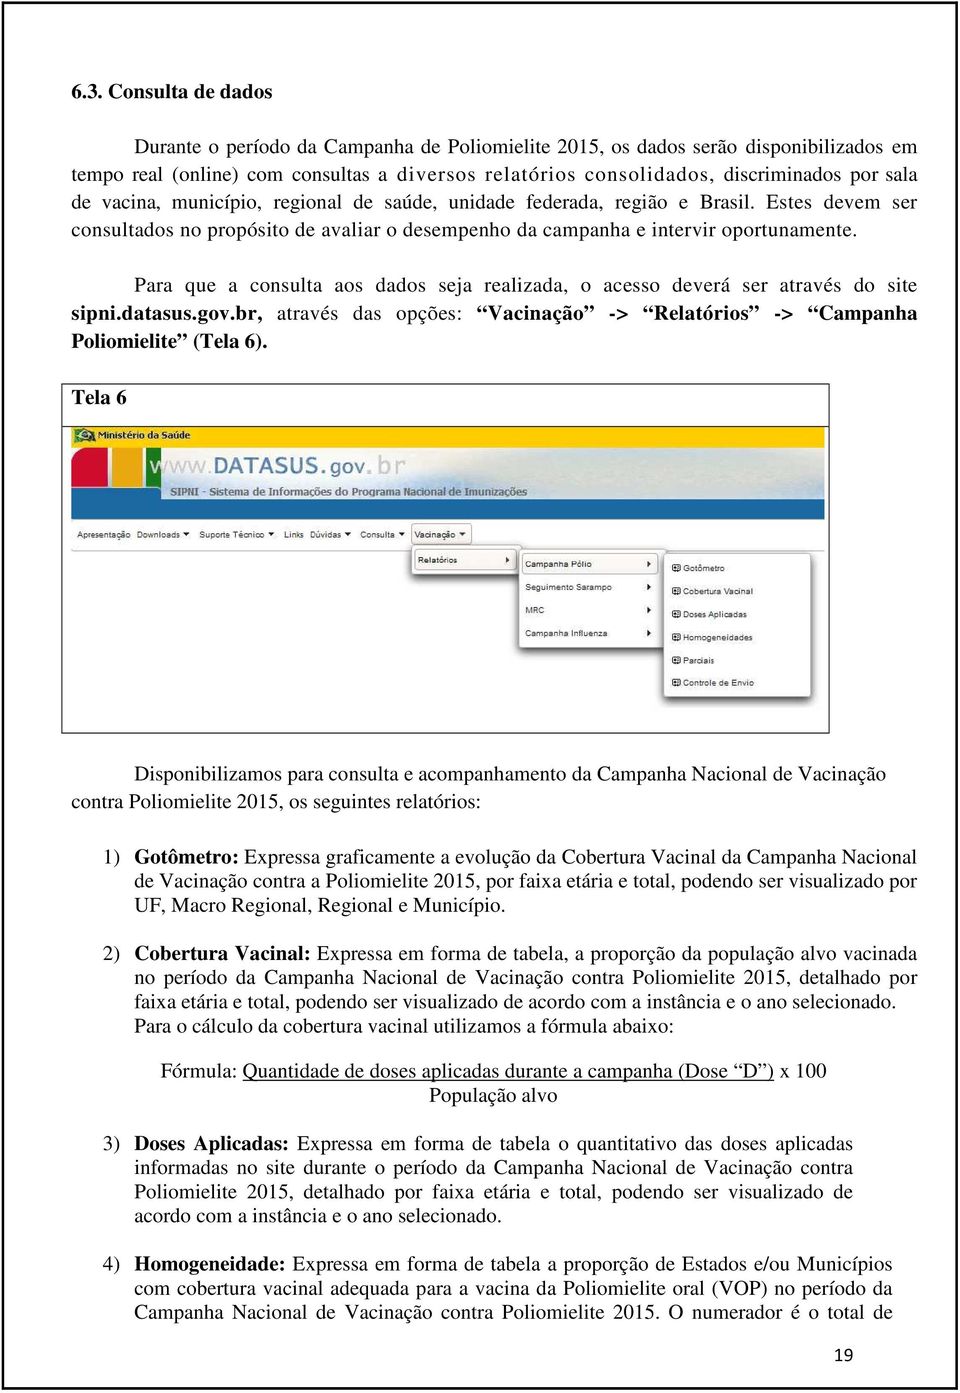 Para que a consulta aos dados seja realizada, o acesso deverá ser através do site sipni.datasus.gov.br, através das opções: Vacinação -> Relatórios -> Campanha Poliomielite (Tela 6).